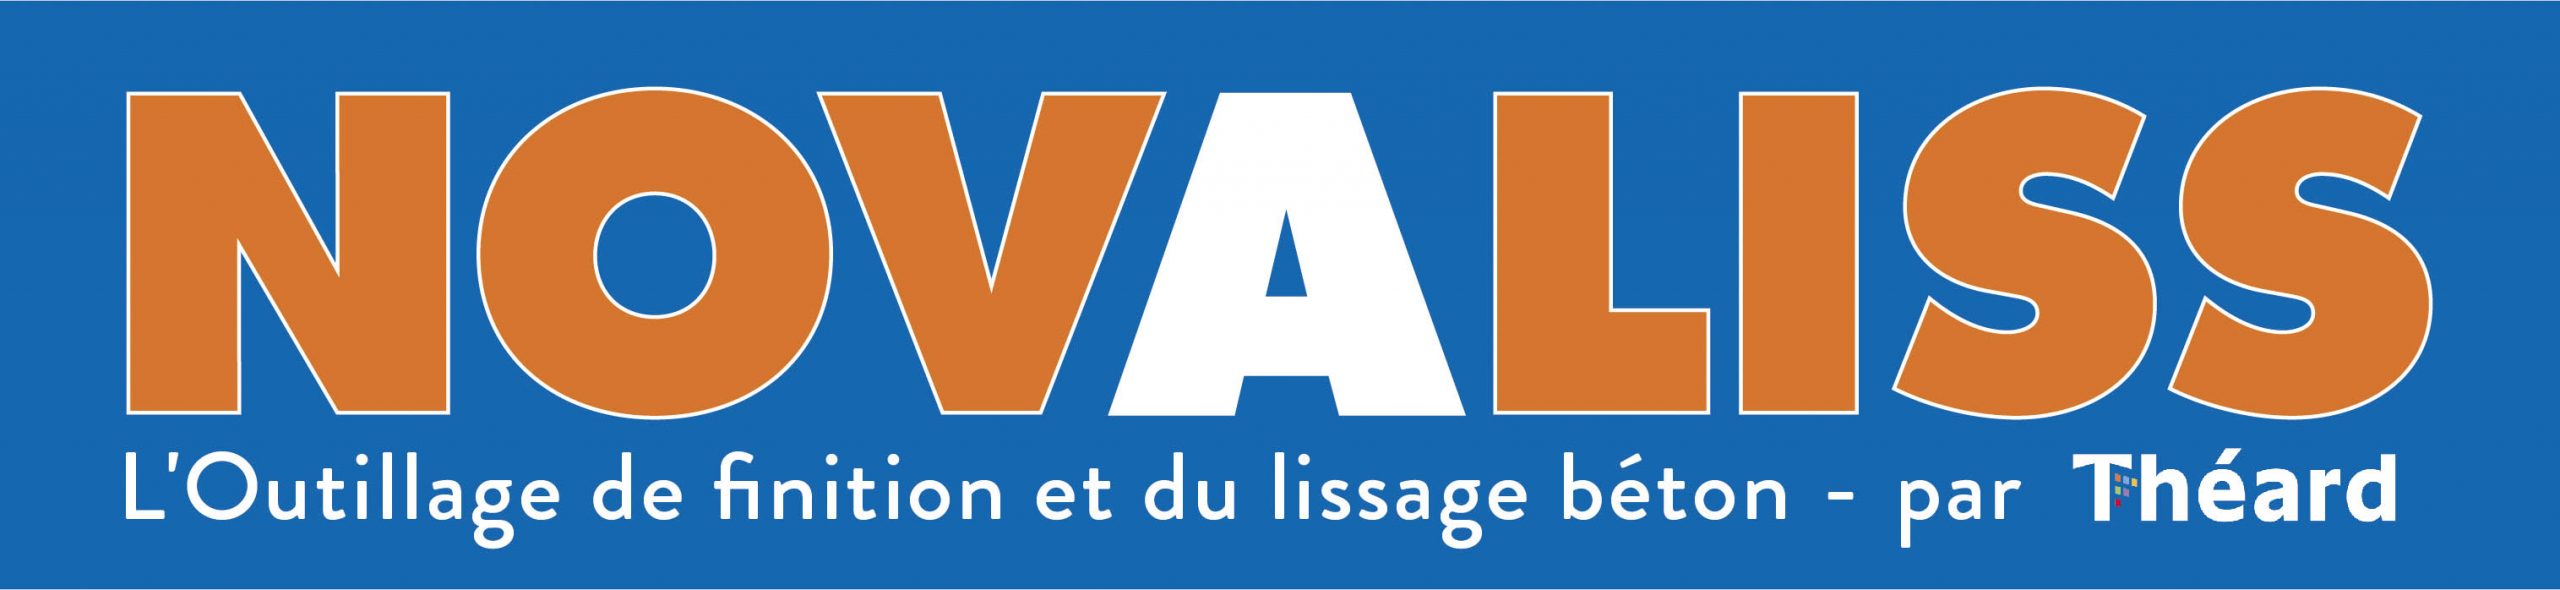 Logo Novaliss par Théard